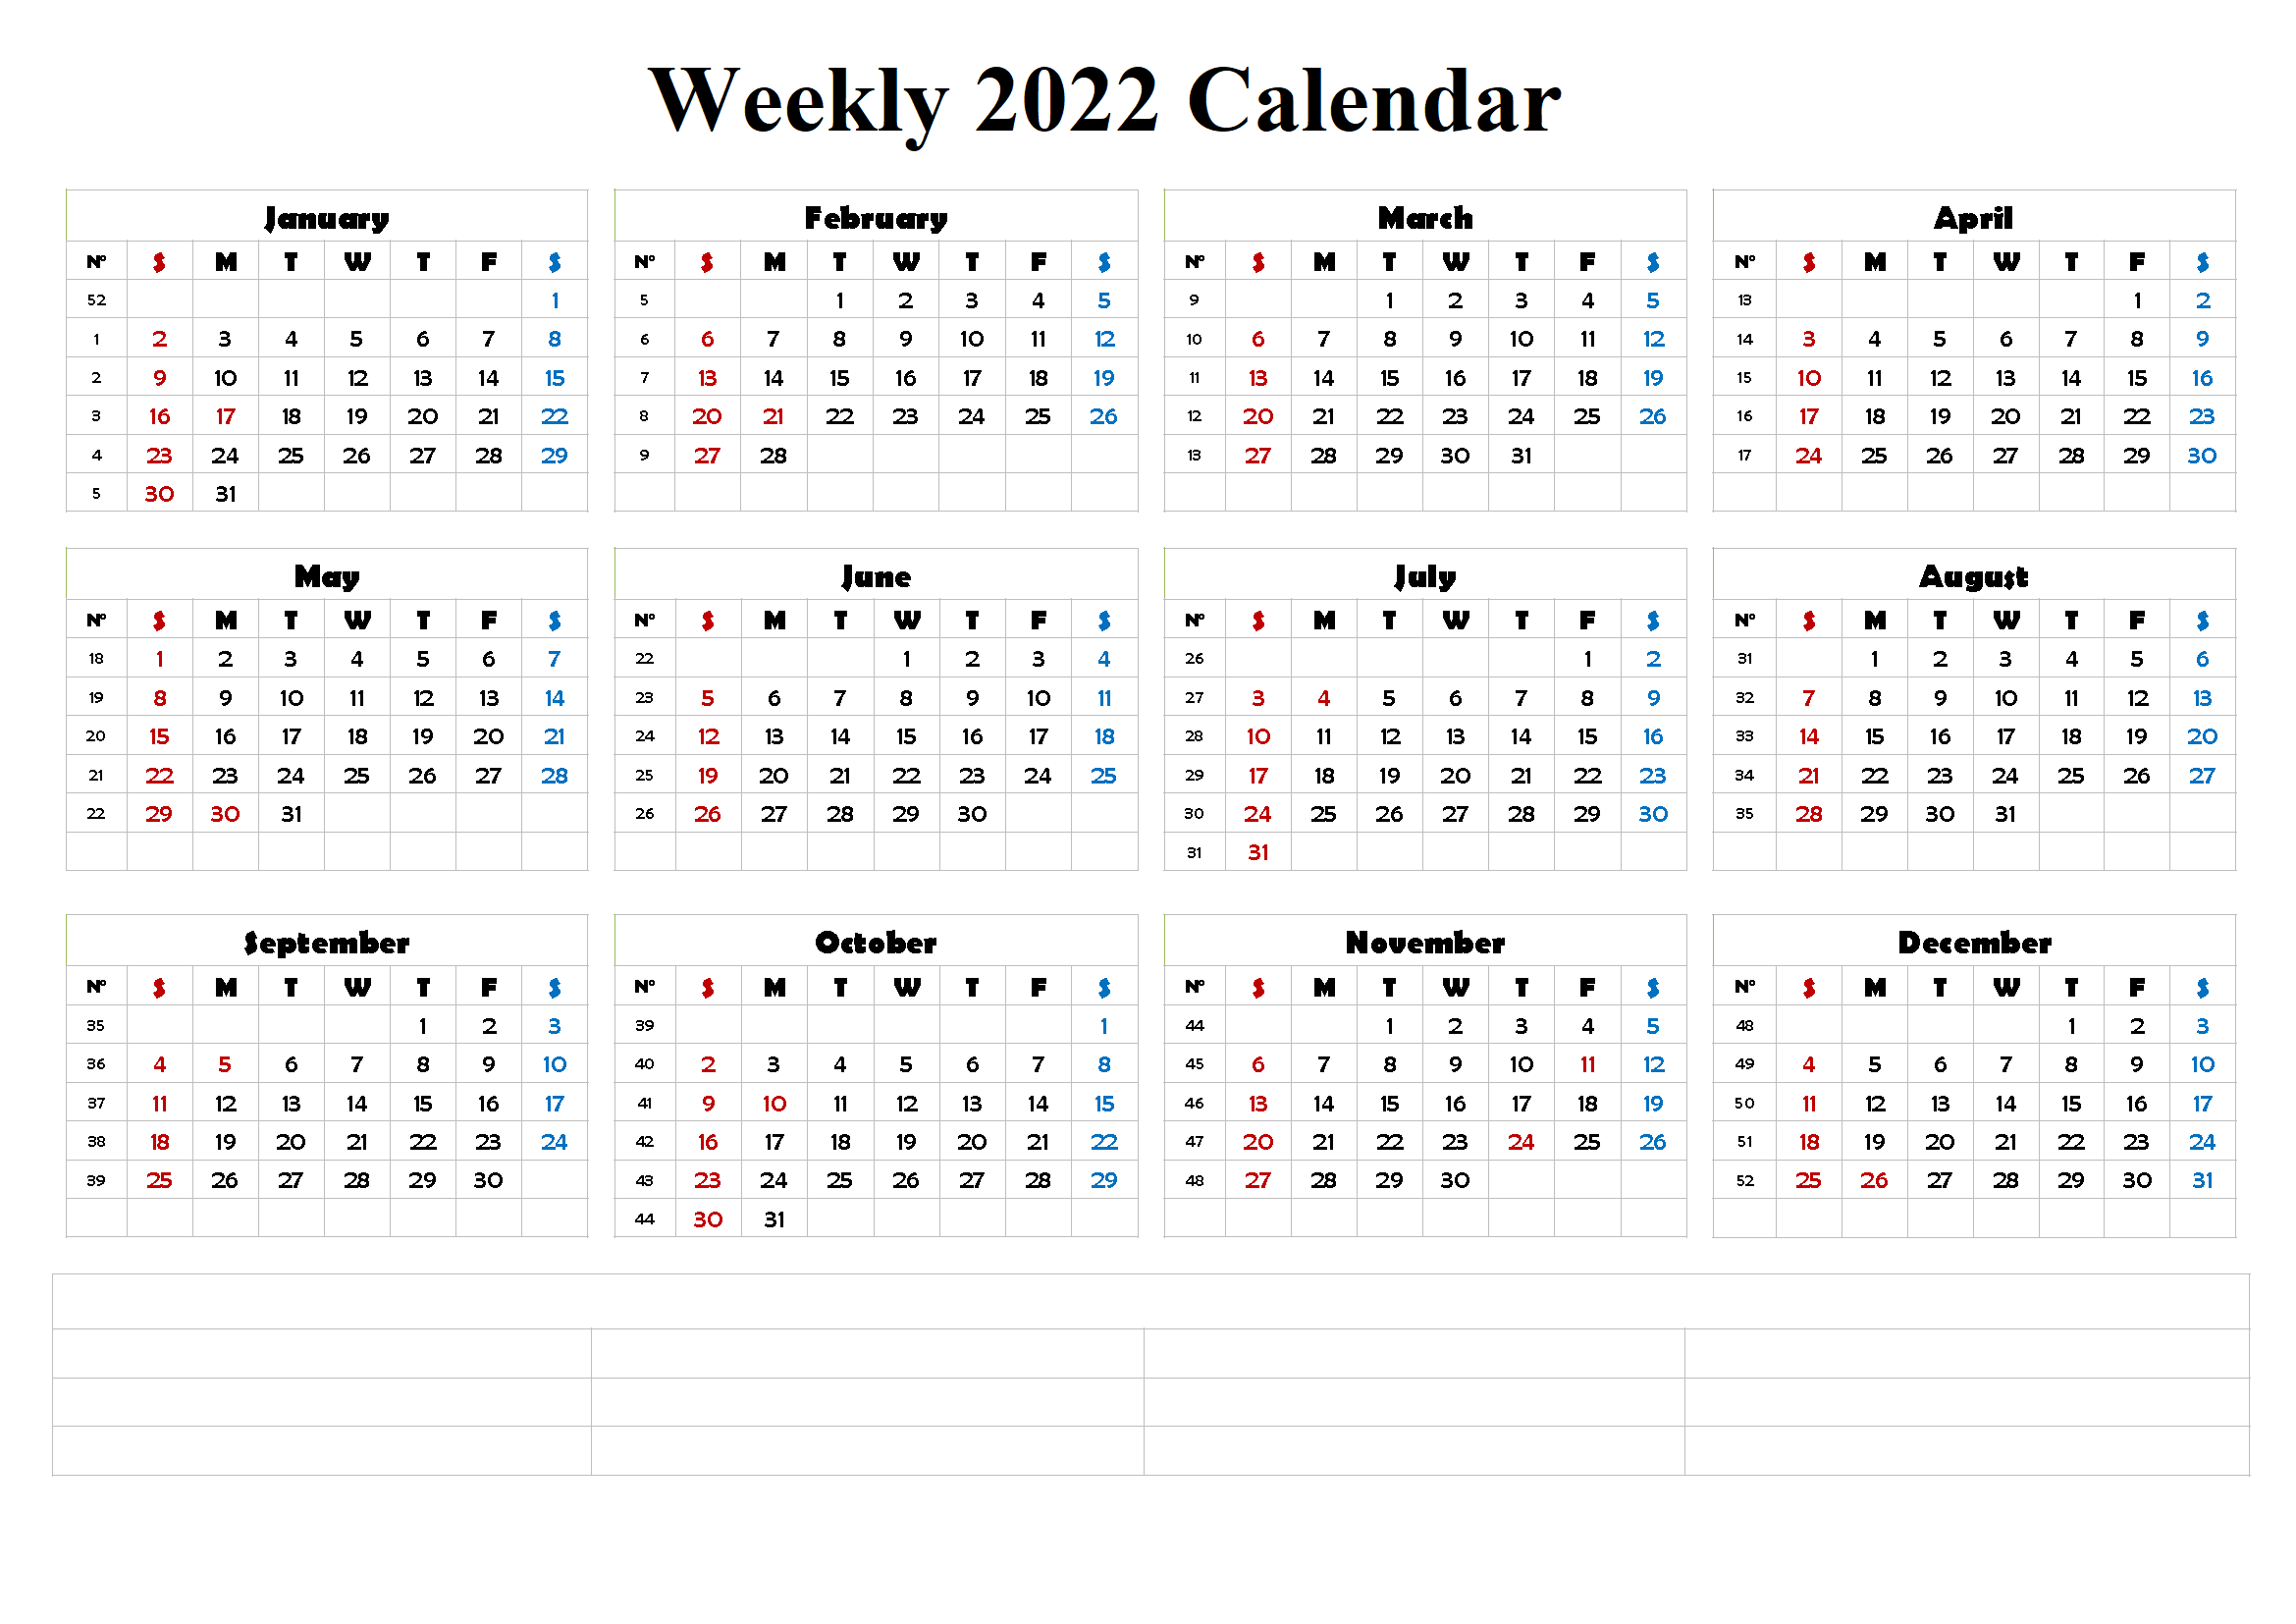 Weekly Calendar 2022